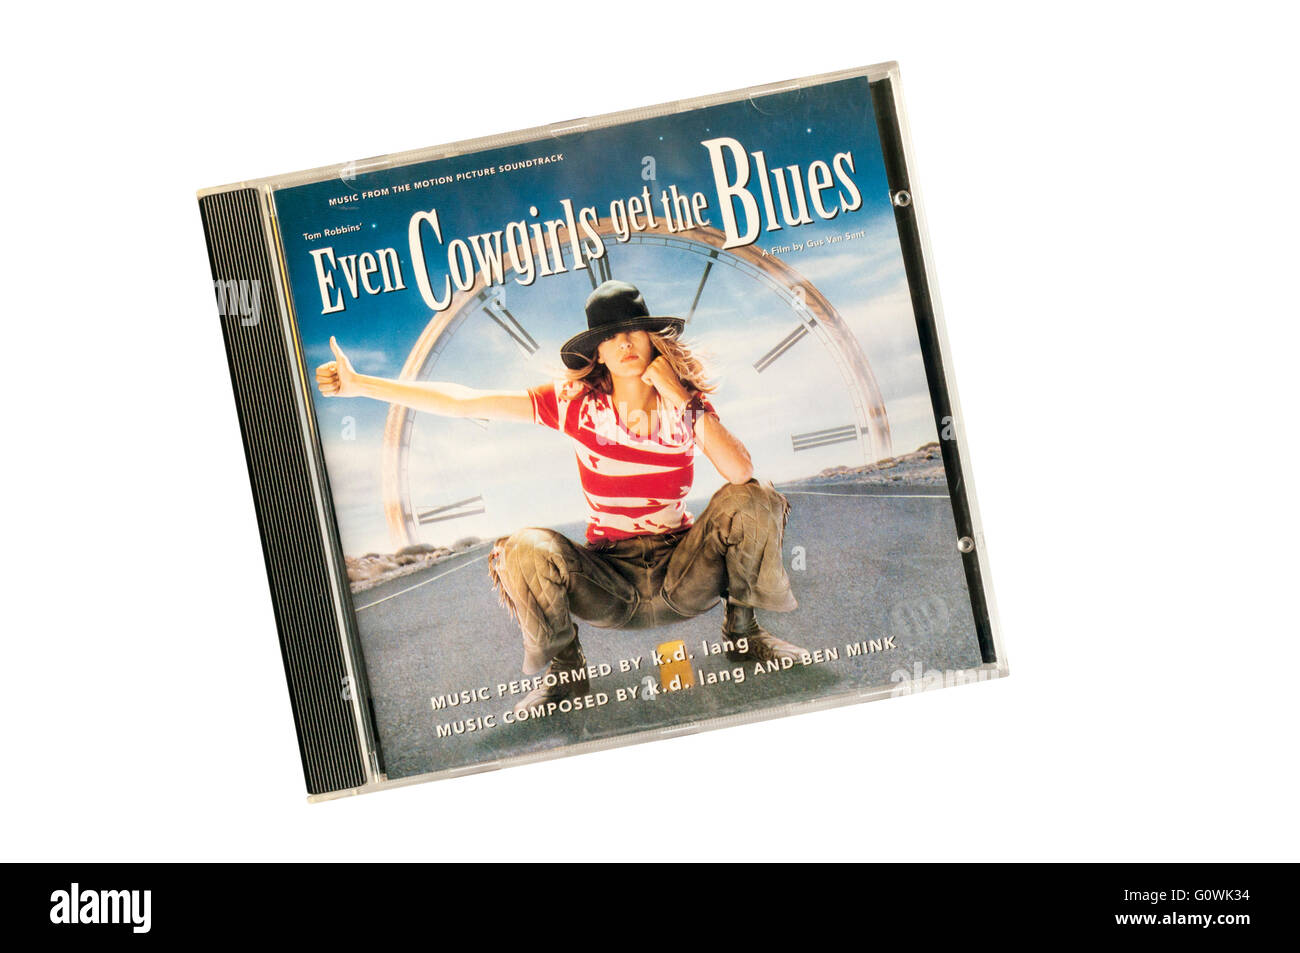 Auch Cowgirls Get The Blues war k.d. Lang Soundtrack zur Verfilmung von Tom Robbins Roman mit dem gleichen Namen.  Veröffentlicht in 1993. Stockfoto